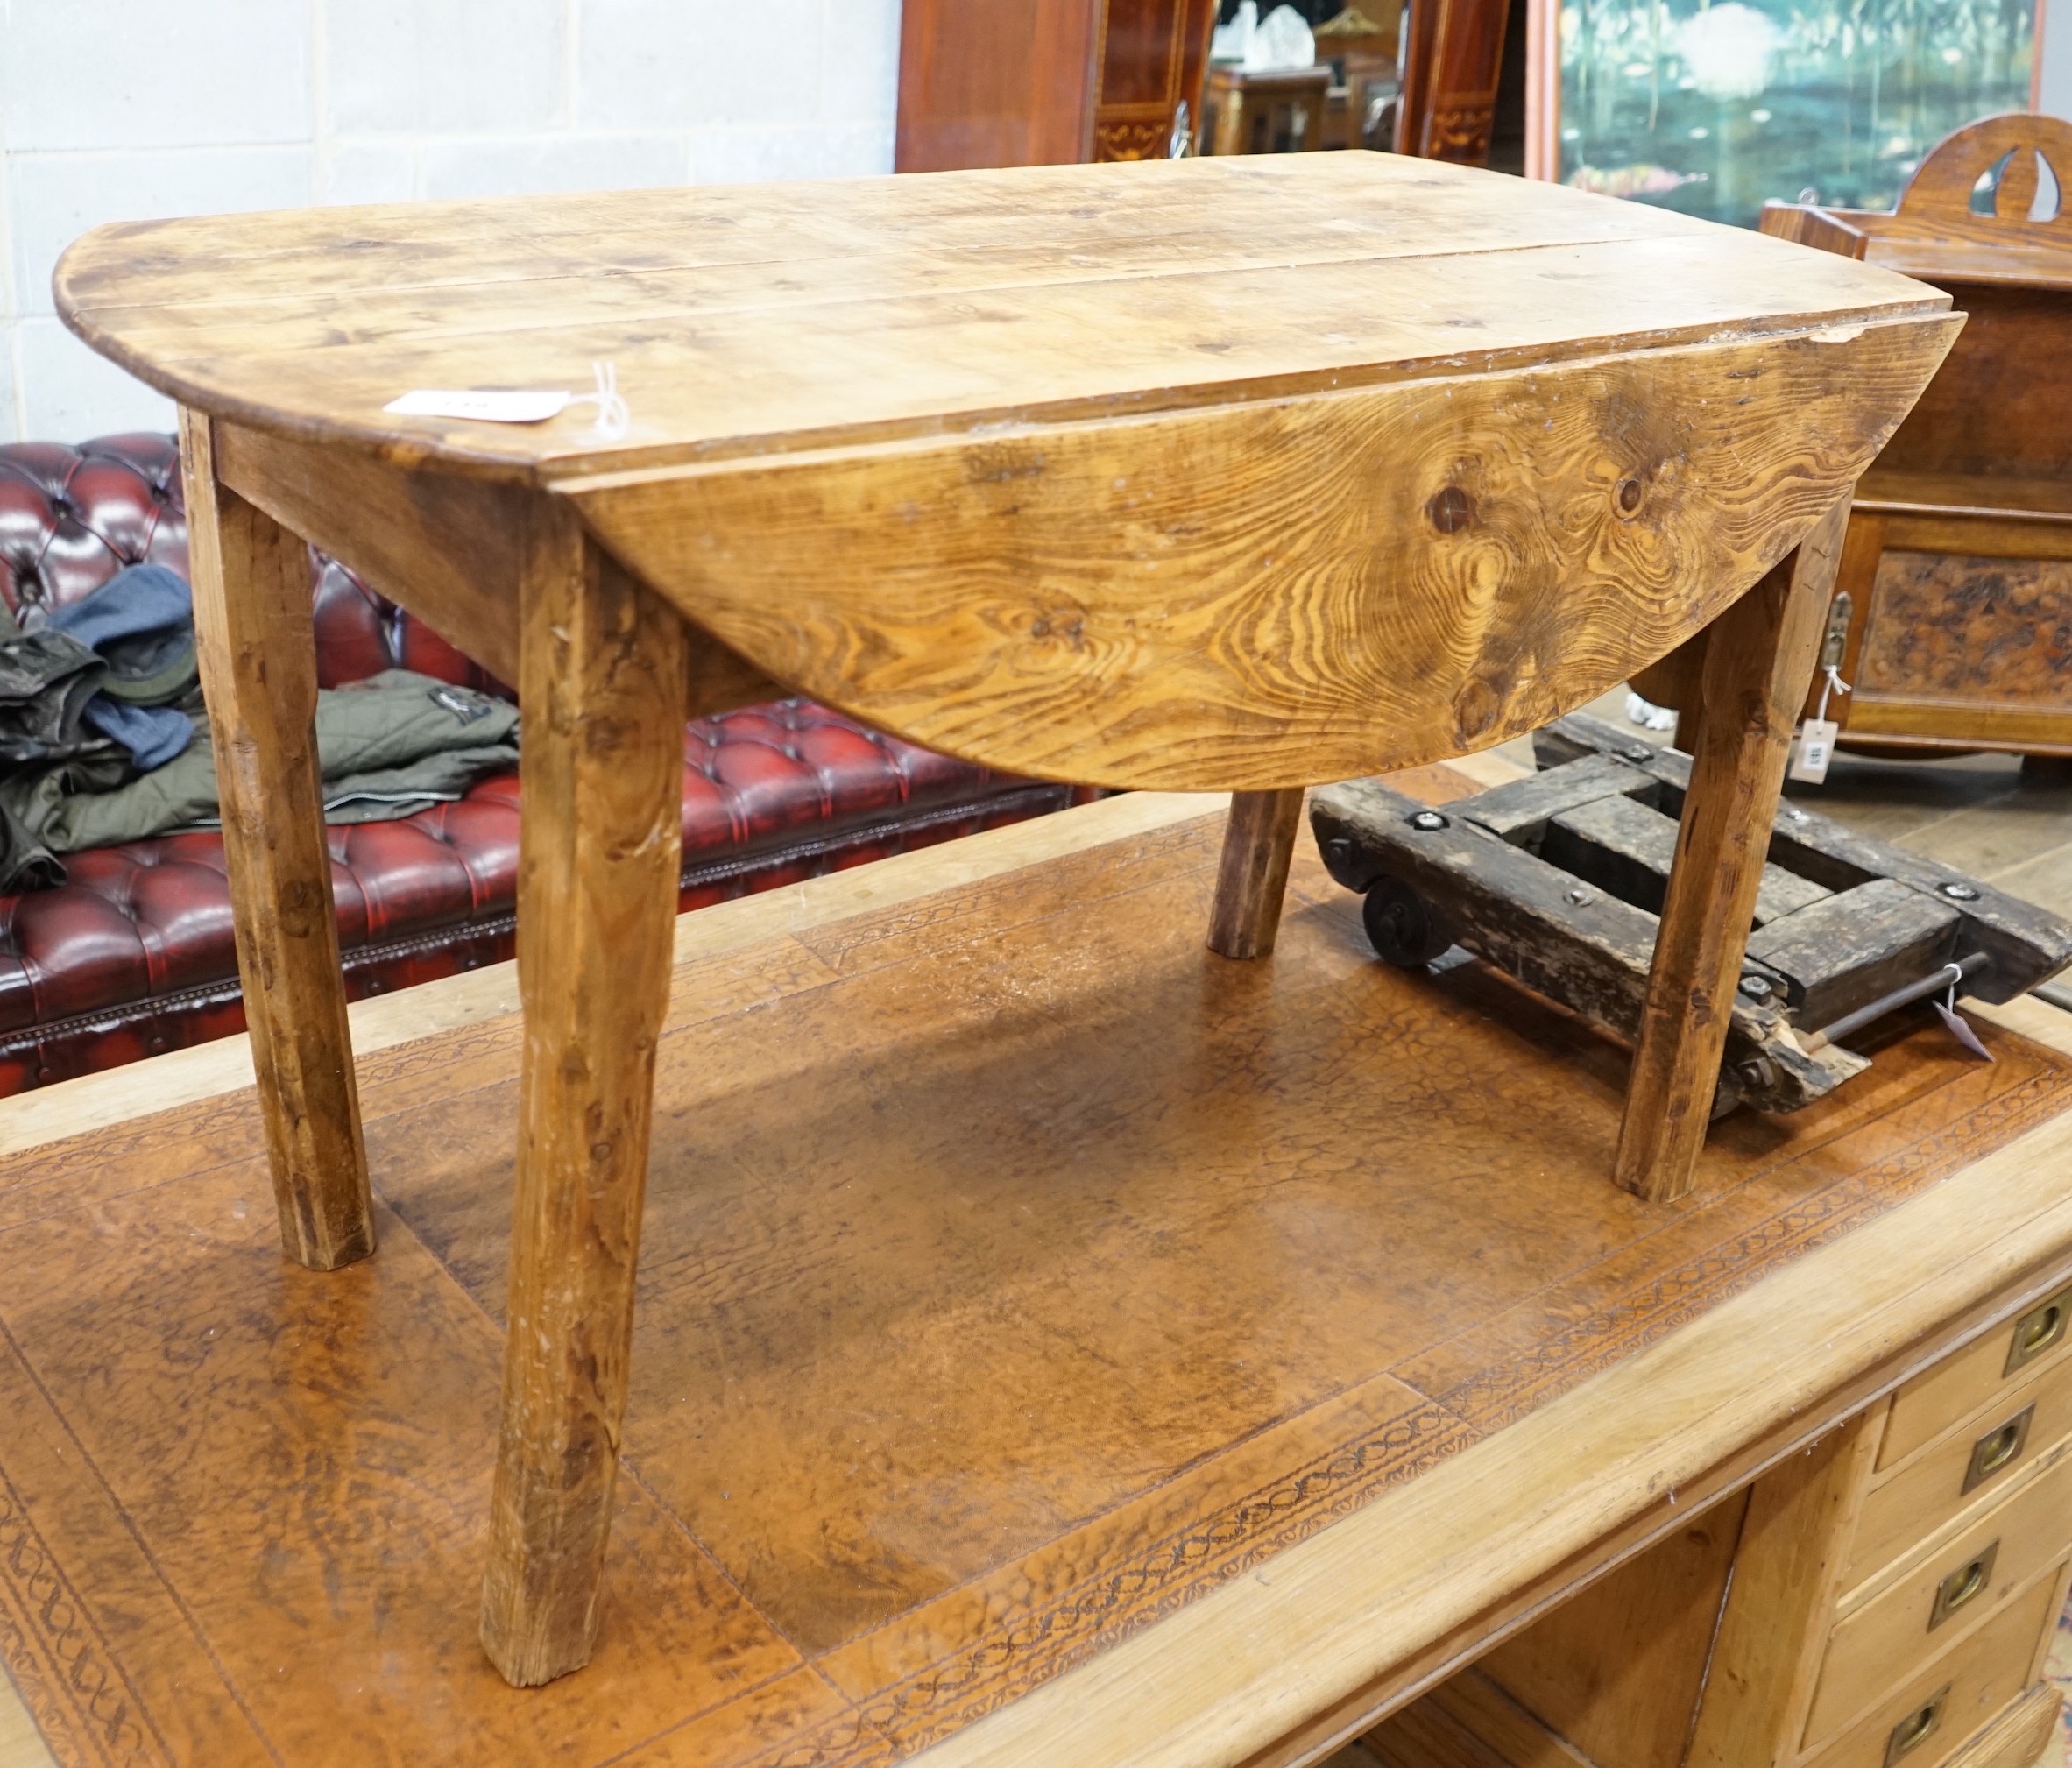 A 19th century provincial elm drop flap kitchen table, length 117cm, width 57cm, height 69cm